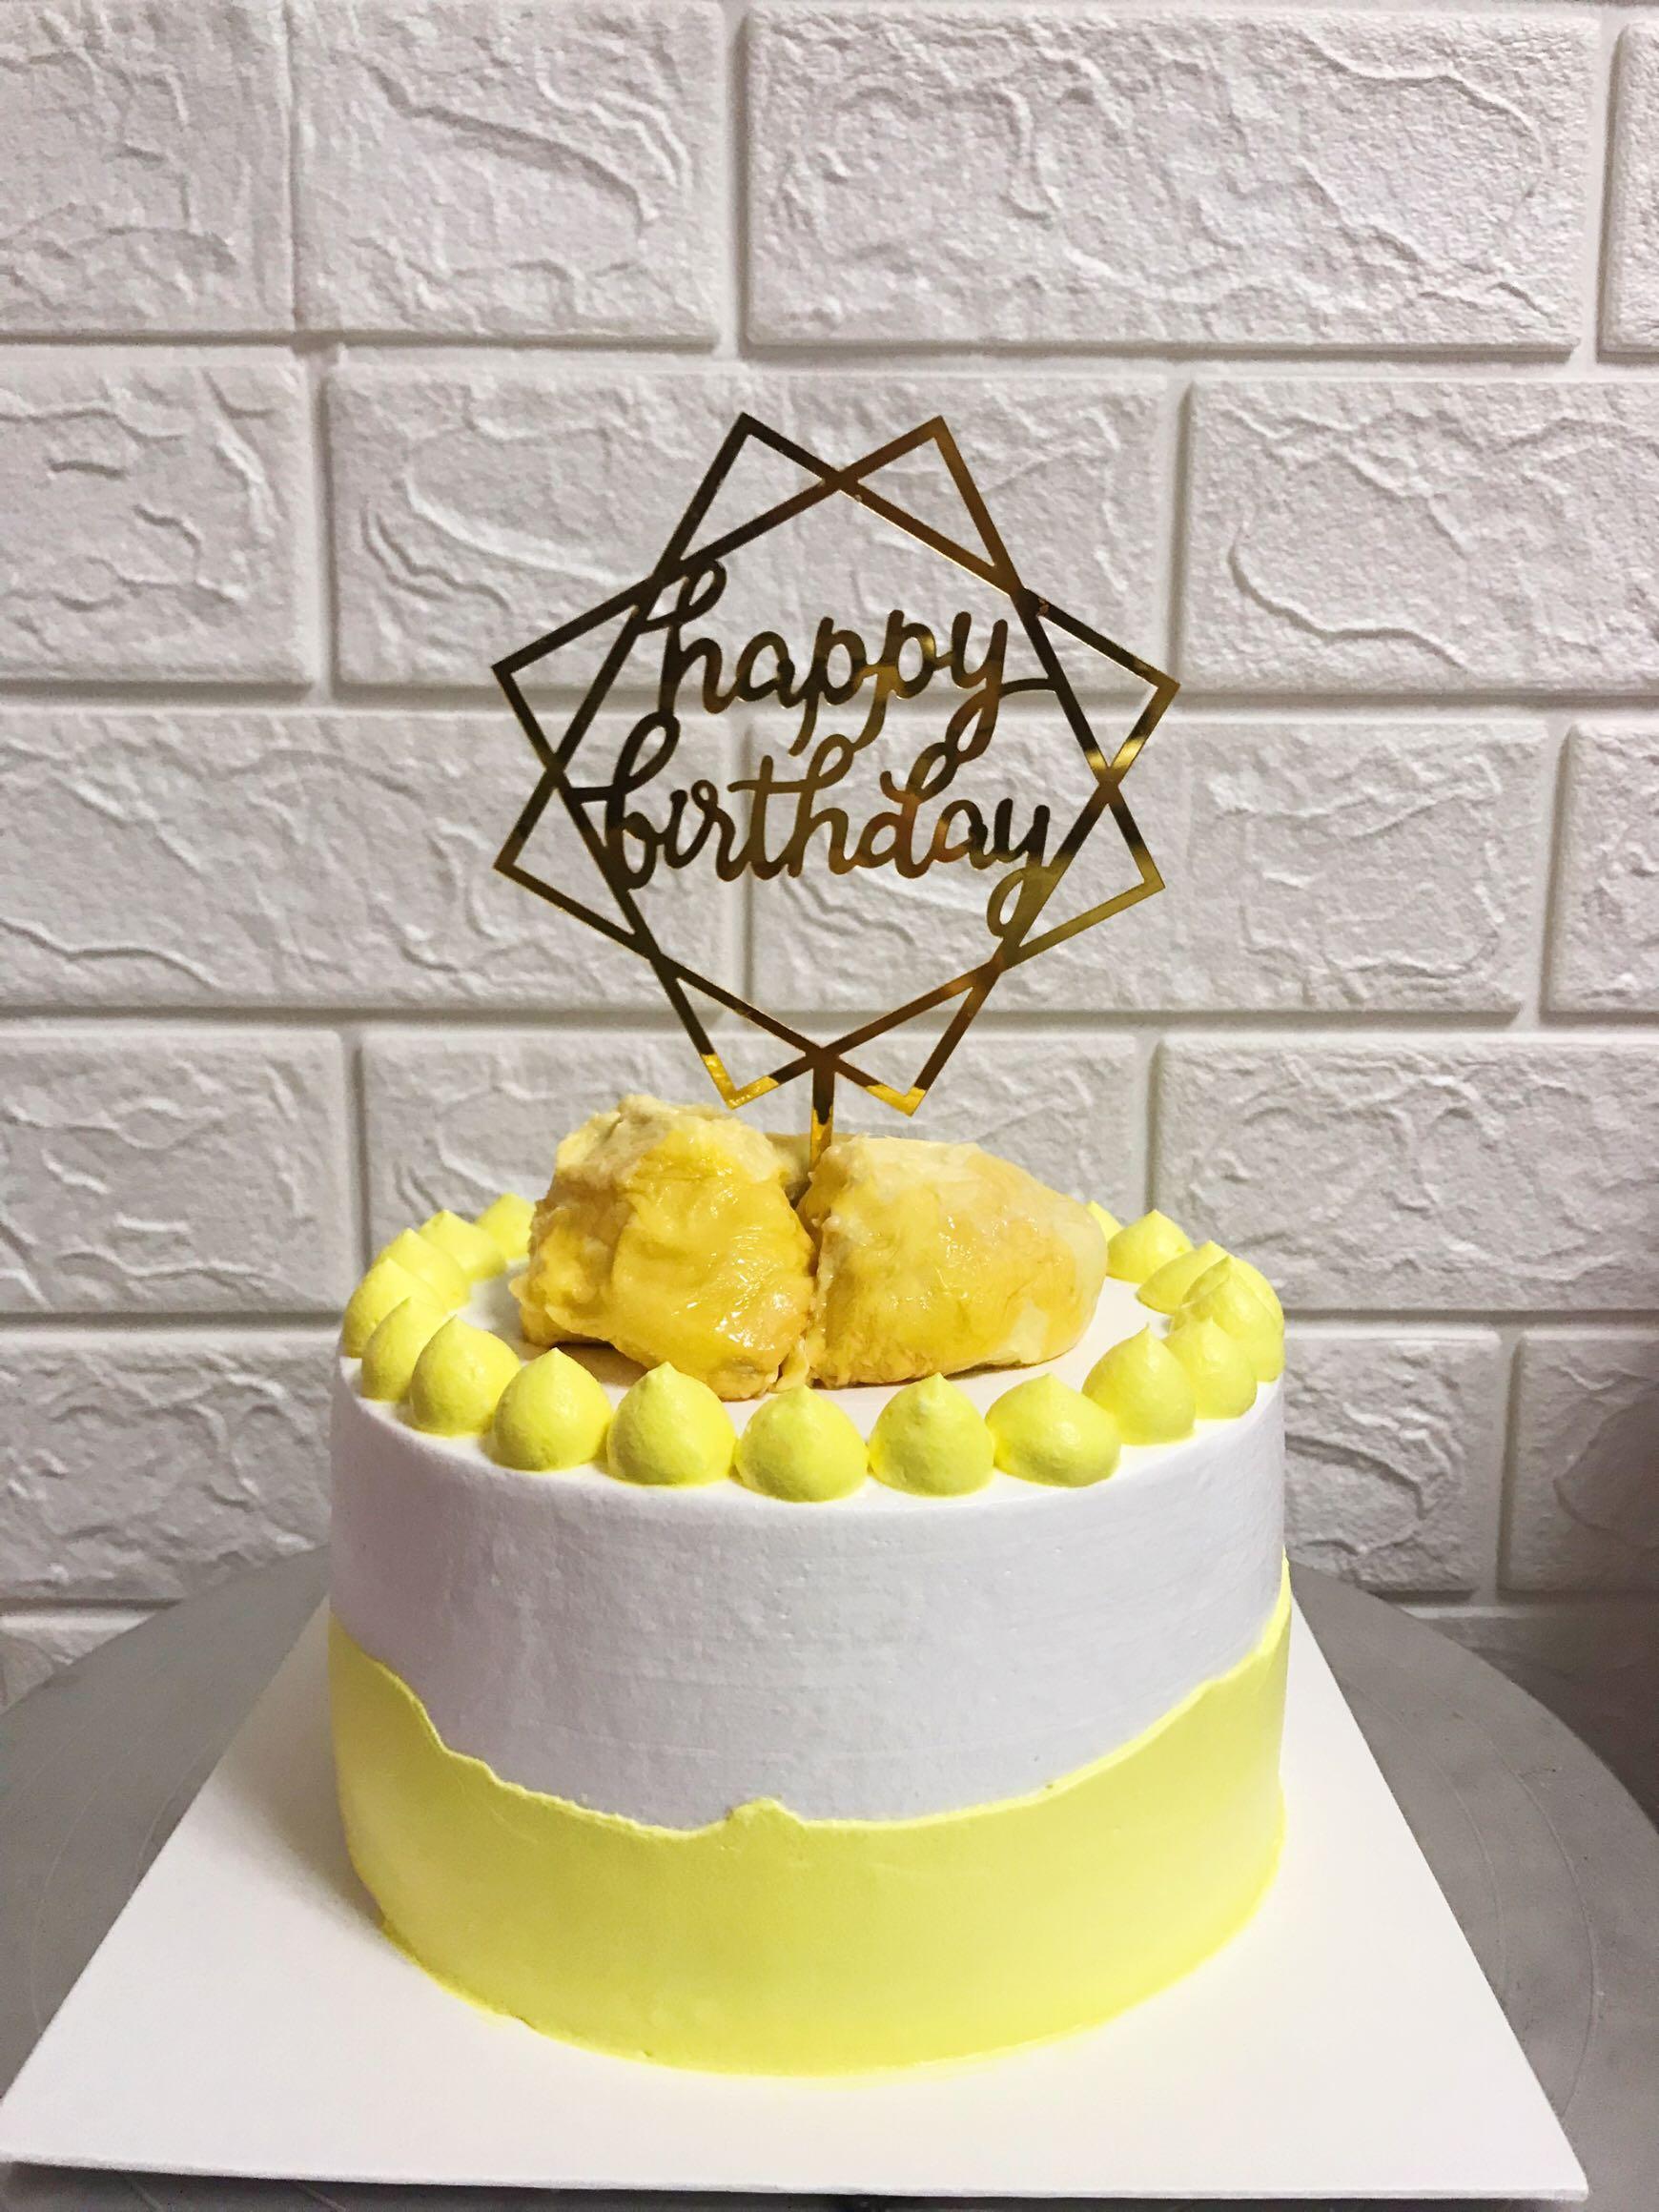 Durian themed cakes | Thức ăn, Tráng miệng, Bánh ngọt